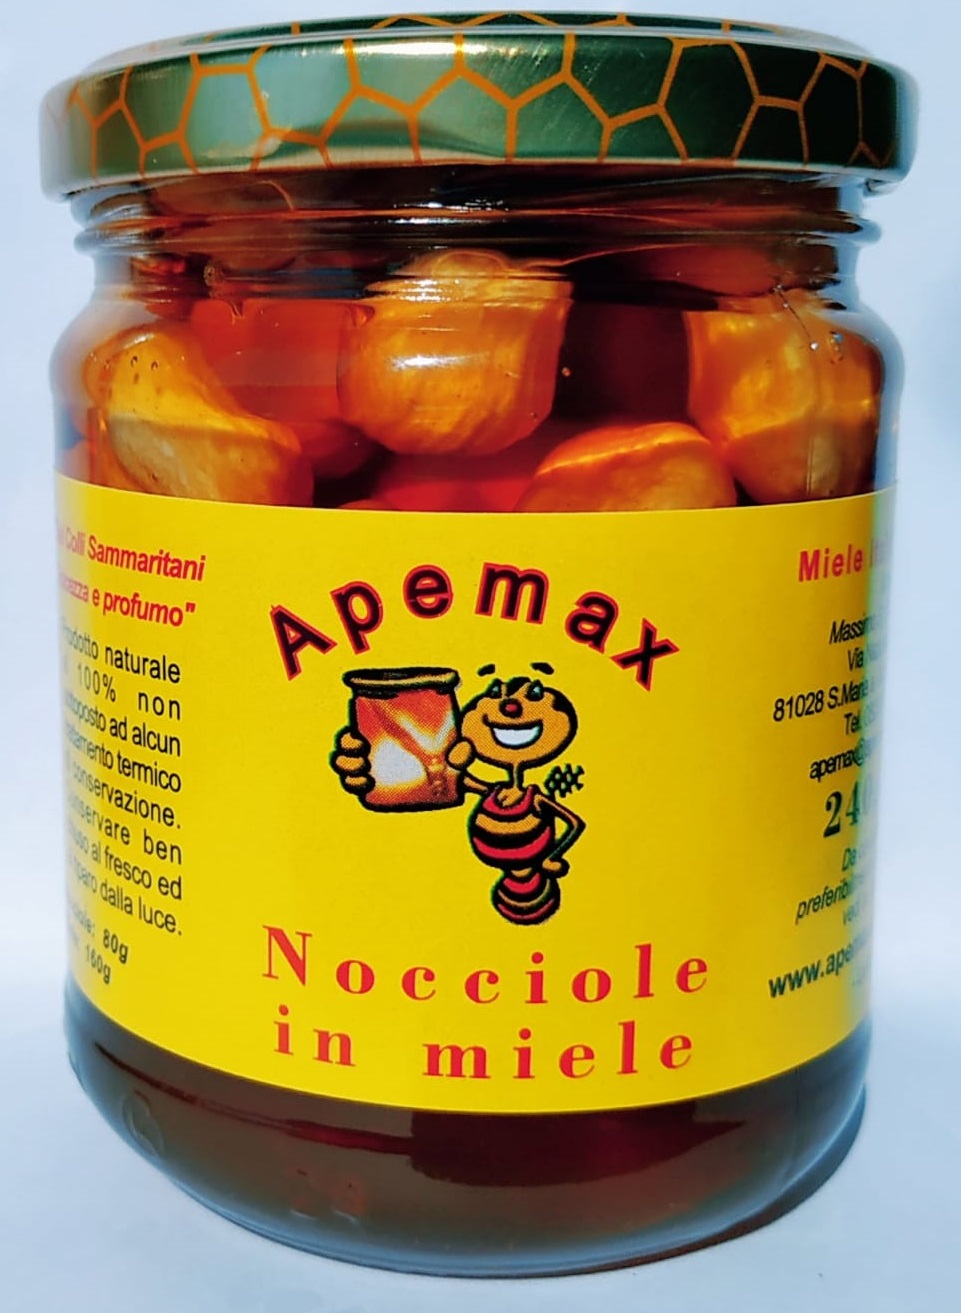 Nocciole in miele, Miele, Campania, Prodotti tipici, vendita miele online, cucina, cibo, apicoltura, api